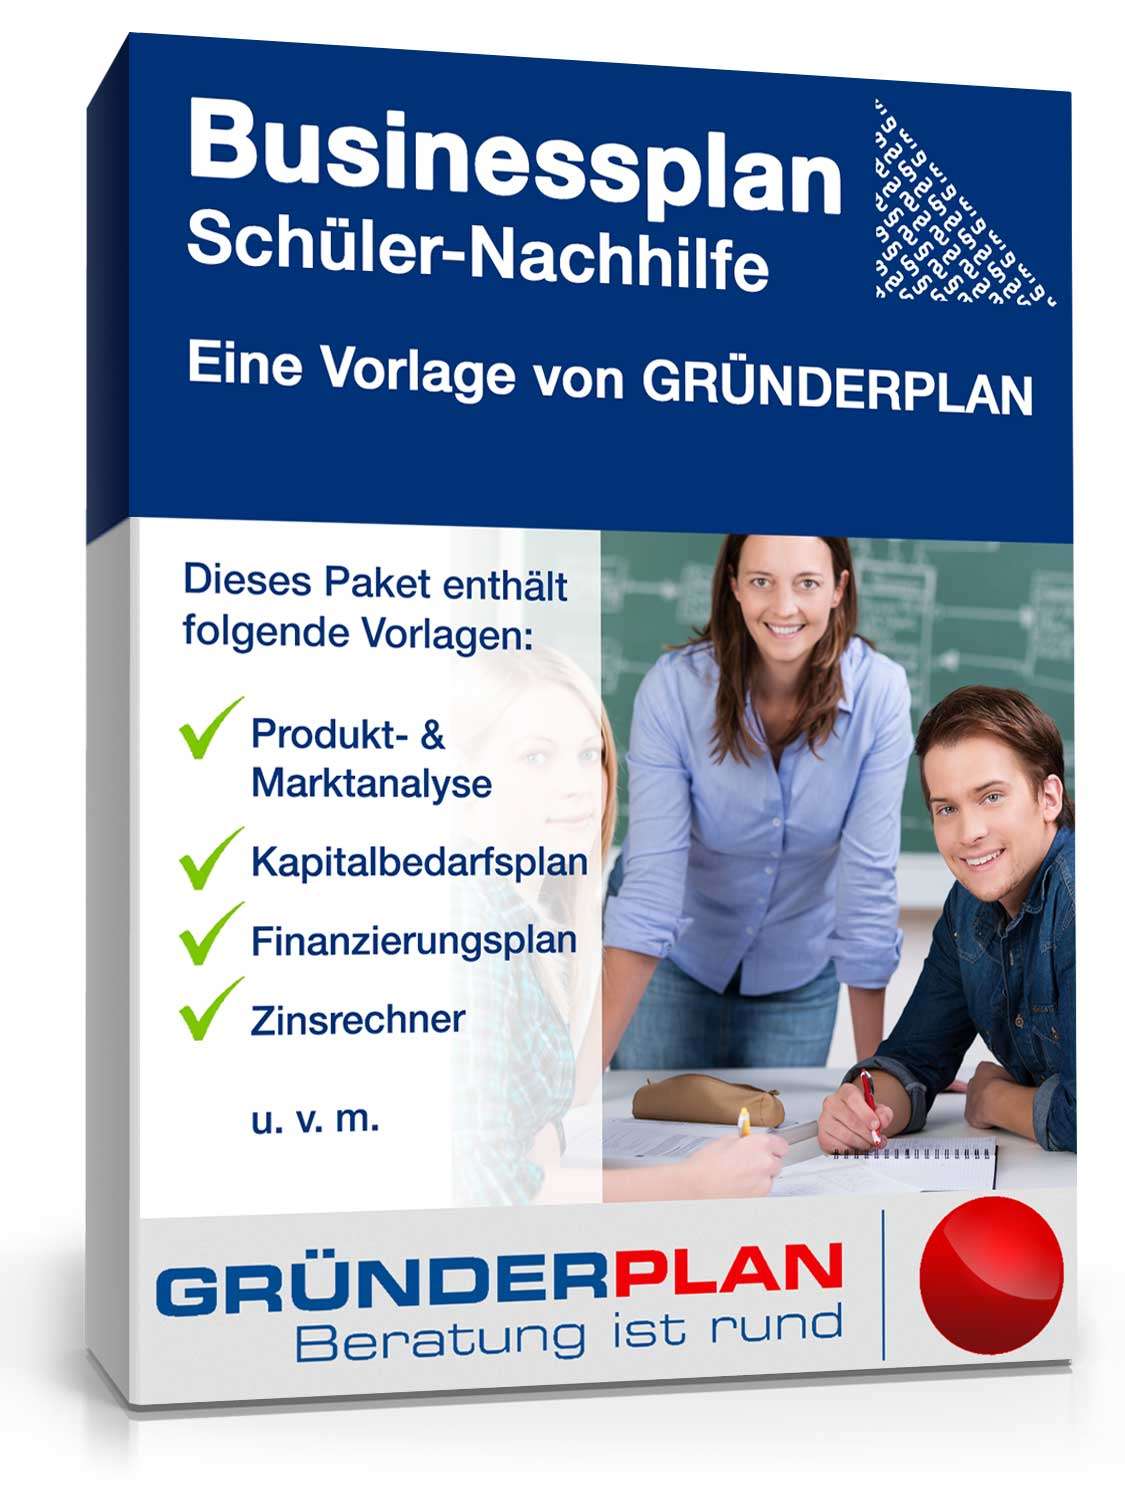 Hauptbild des Produkts: Businessplan Schüler-Nachhilfe von Gründerplan